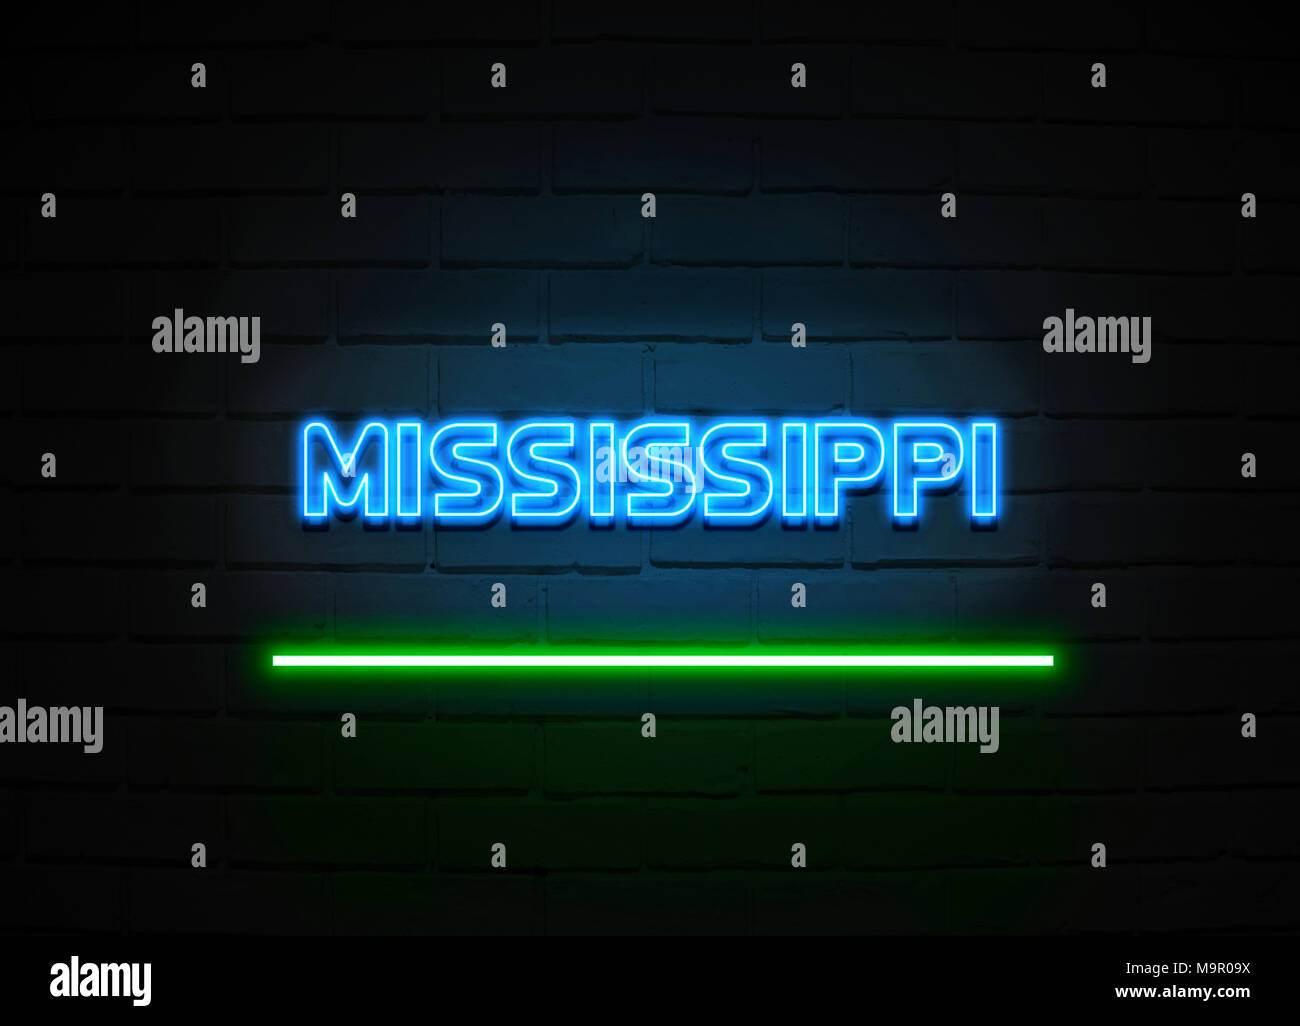 Mississippi Leuchtreklame - glühende Leuchtreklame auf brickwall Wand - 3D-Royalty Free Stock Illustration dargestellt. Stockfoto